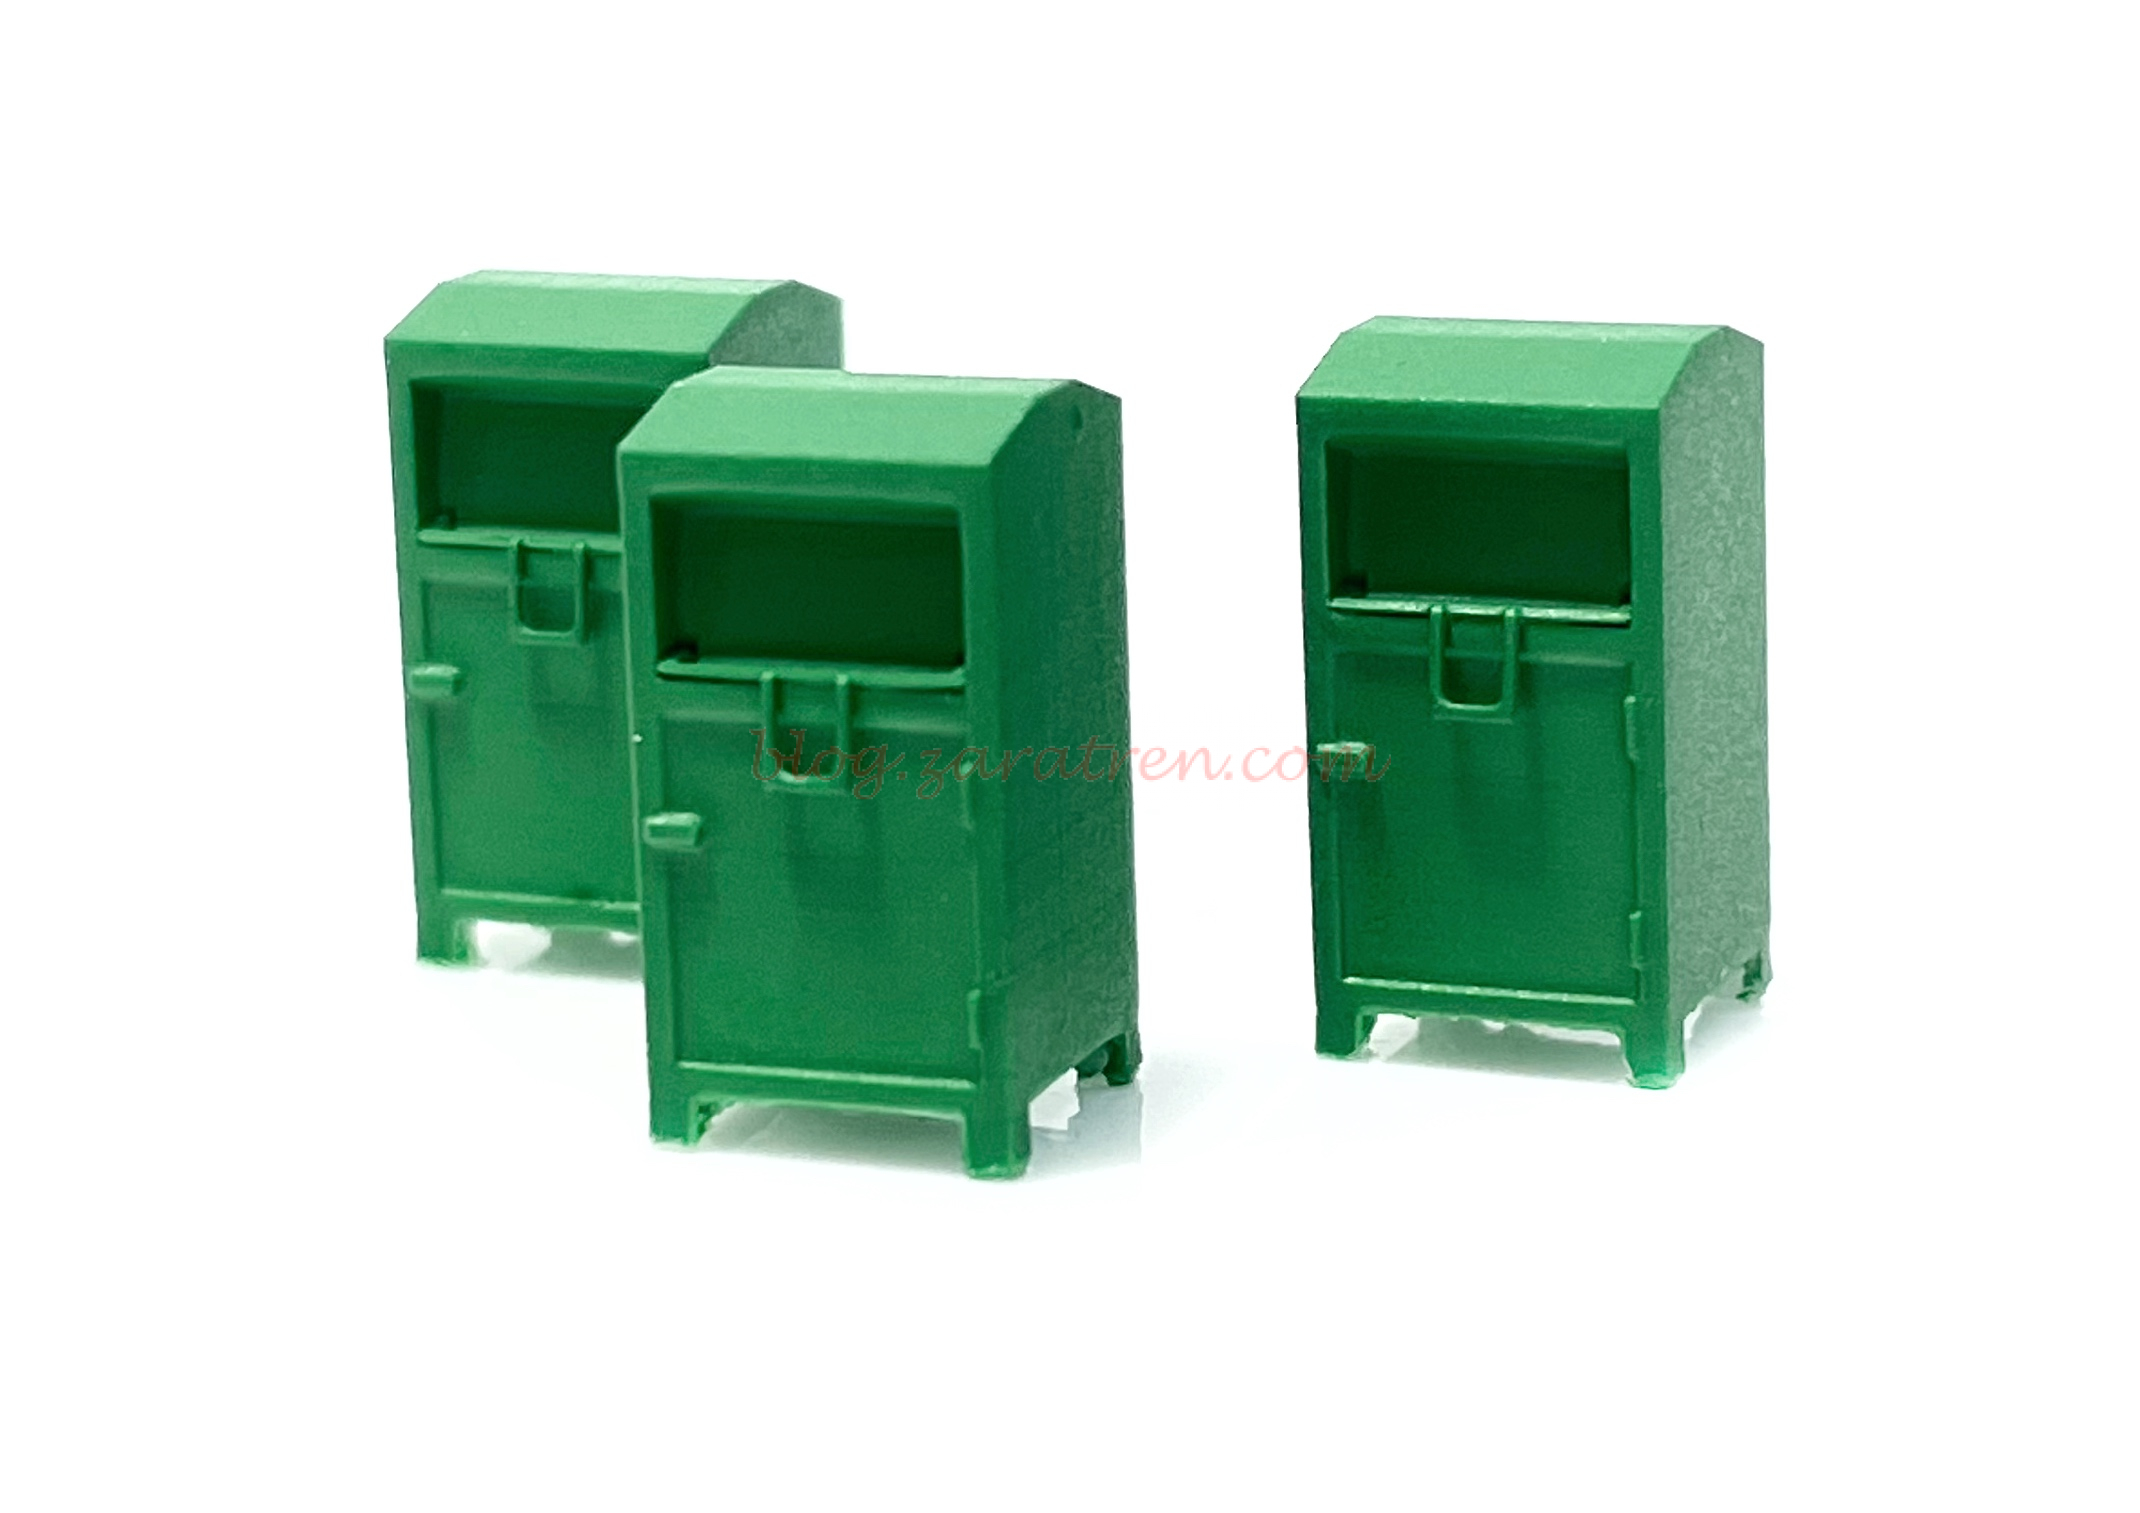 N-Train – Conjunto de contenedores de ropa Verdes, 3 unidades, Escala N, Ref: 211031.